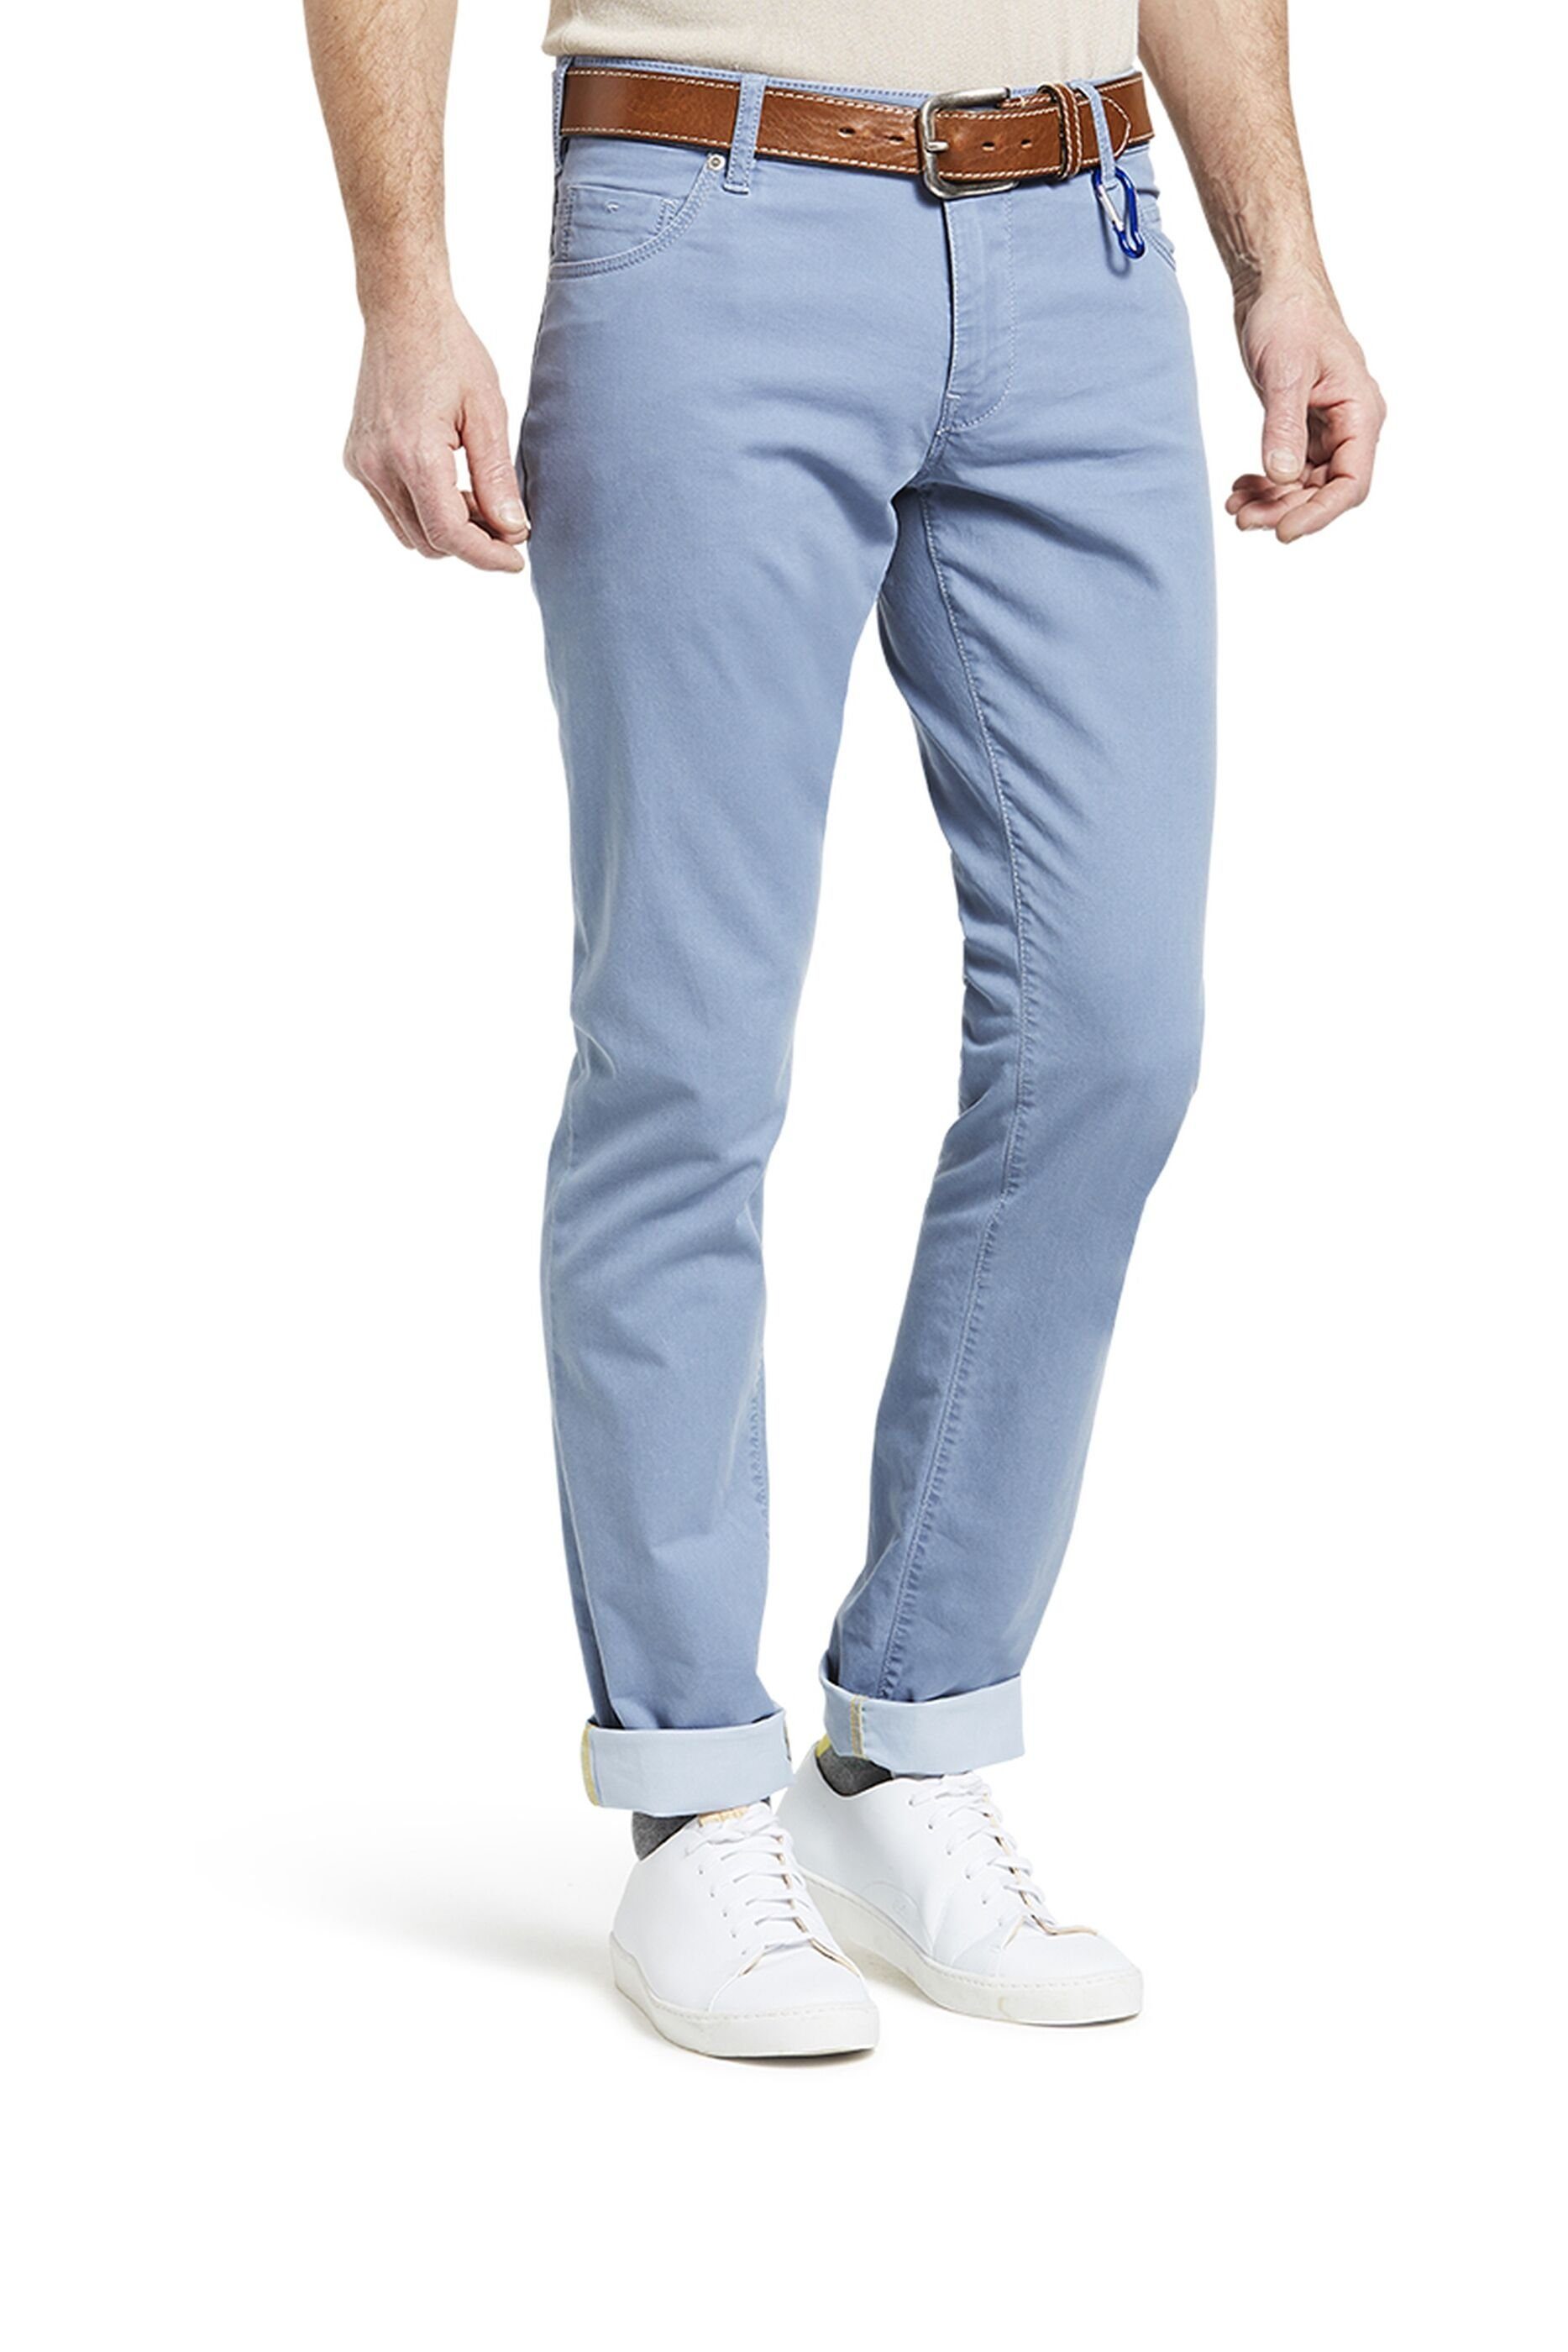 Produktion blau aus 'M5' MEYER Slim-fit-Jeans europäischer